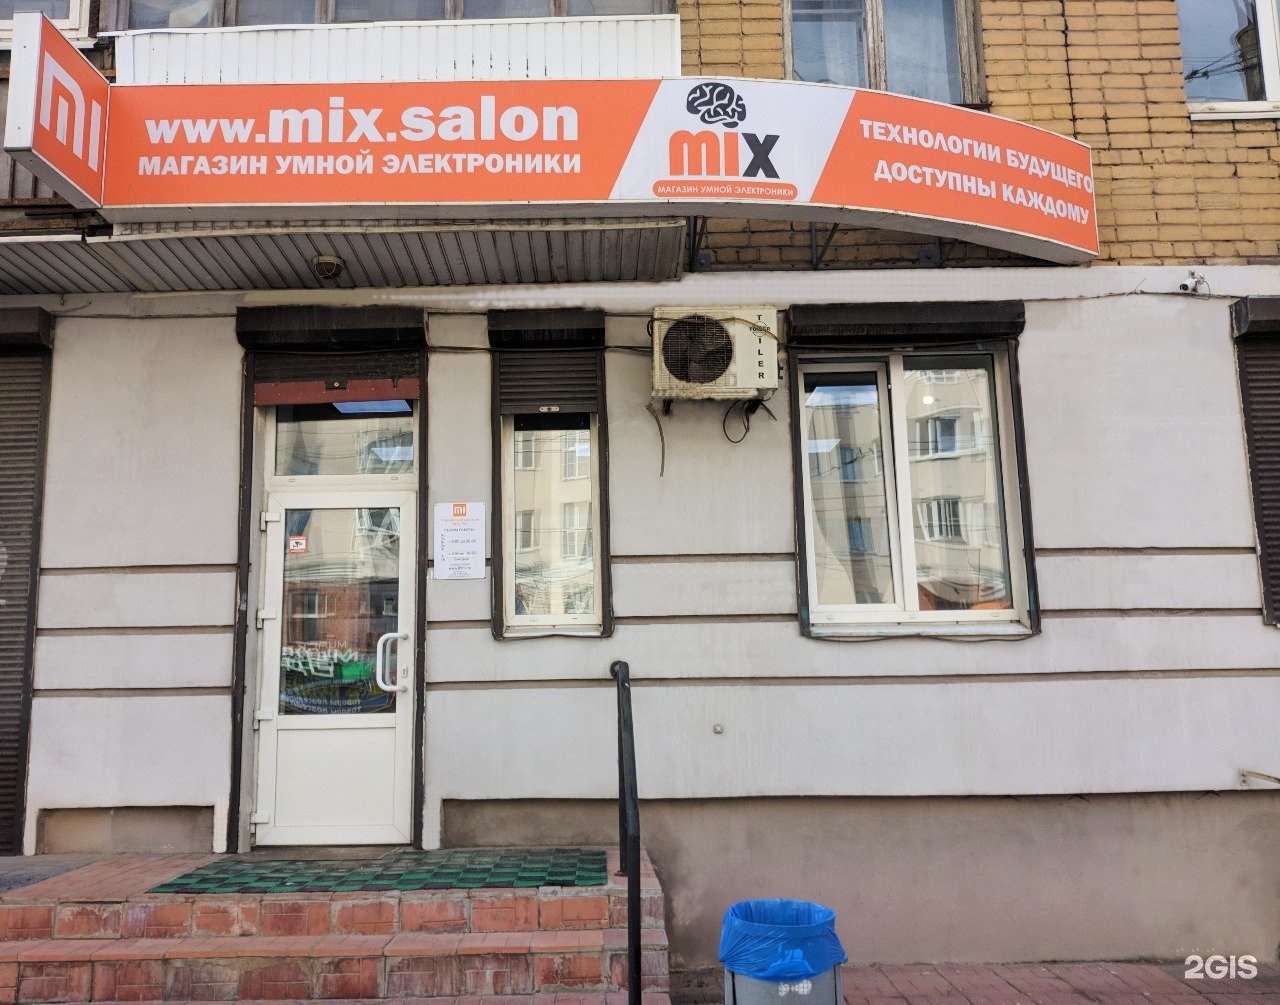 Mix. Salon, Тверь Волоколамский проспект